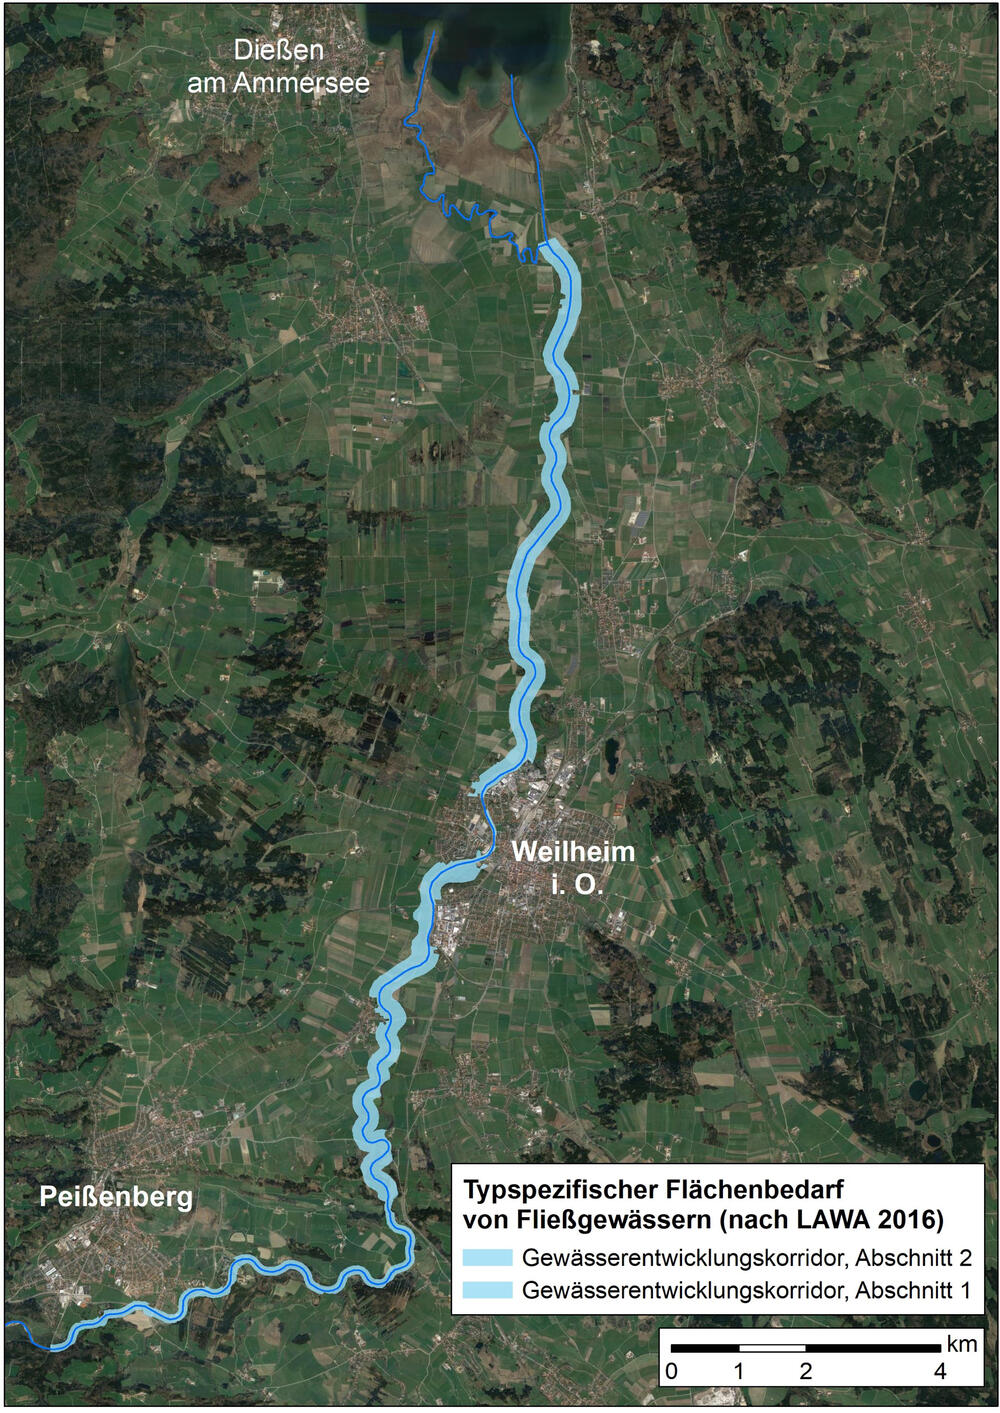 Die Bund/Länder-Arbeitsgemeinschaft Wasser entwarf ebenfalls ein Konzept zur Bestimmung des typspezifischen Flächenbedarfs von Fließgewässern © Deutsche Bundesstiftung Umwelt